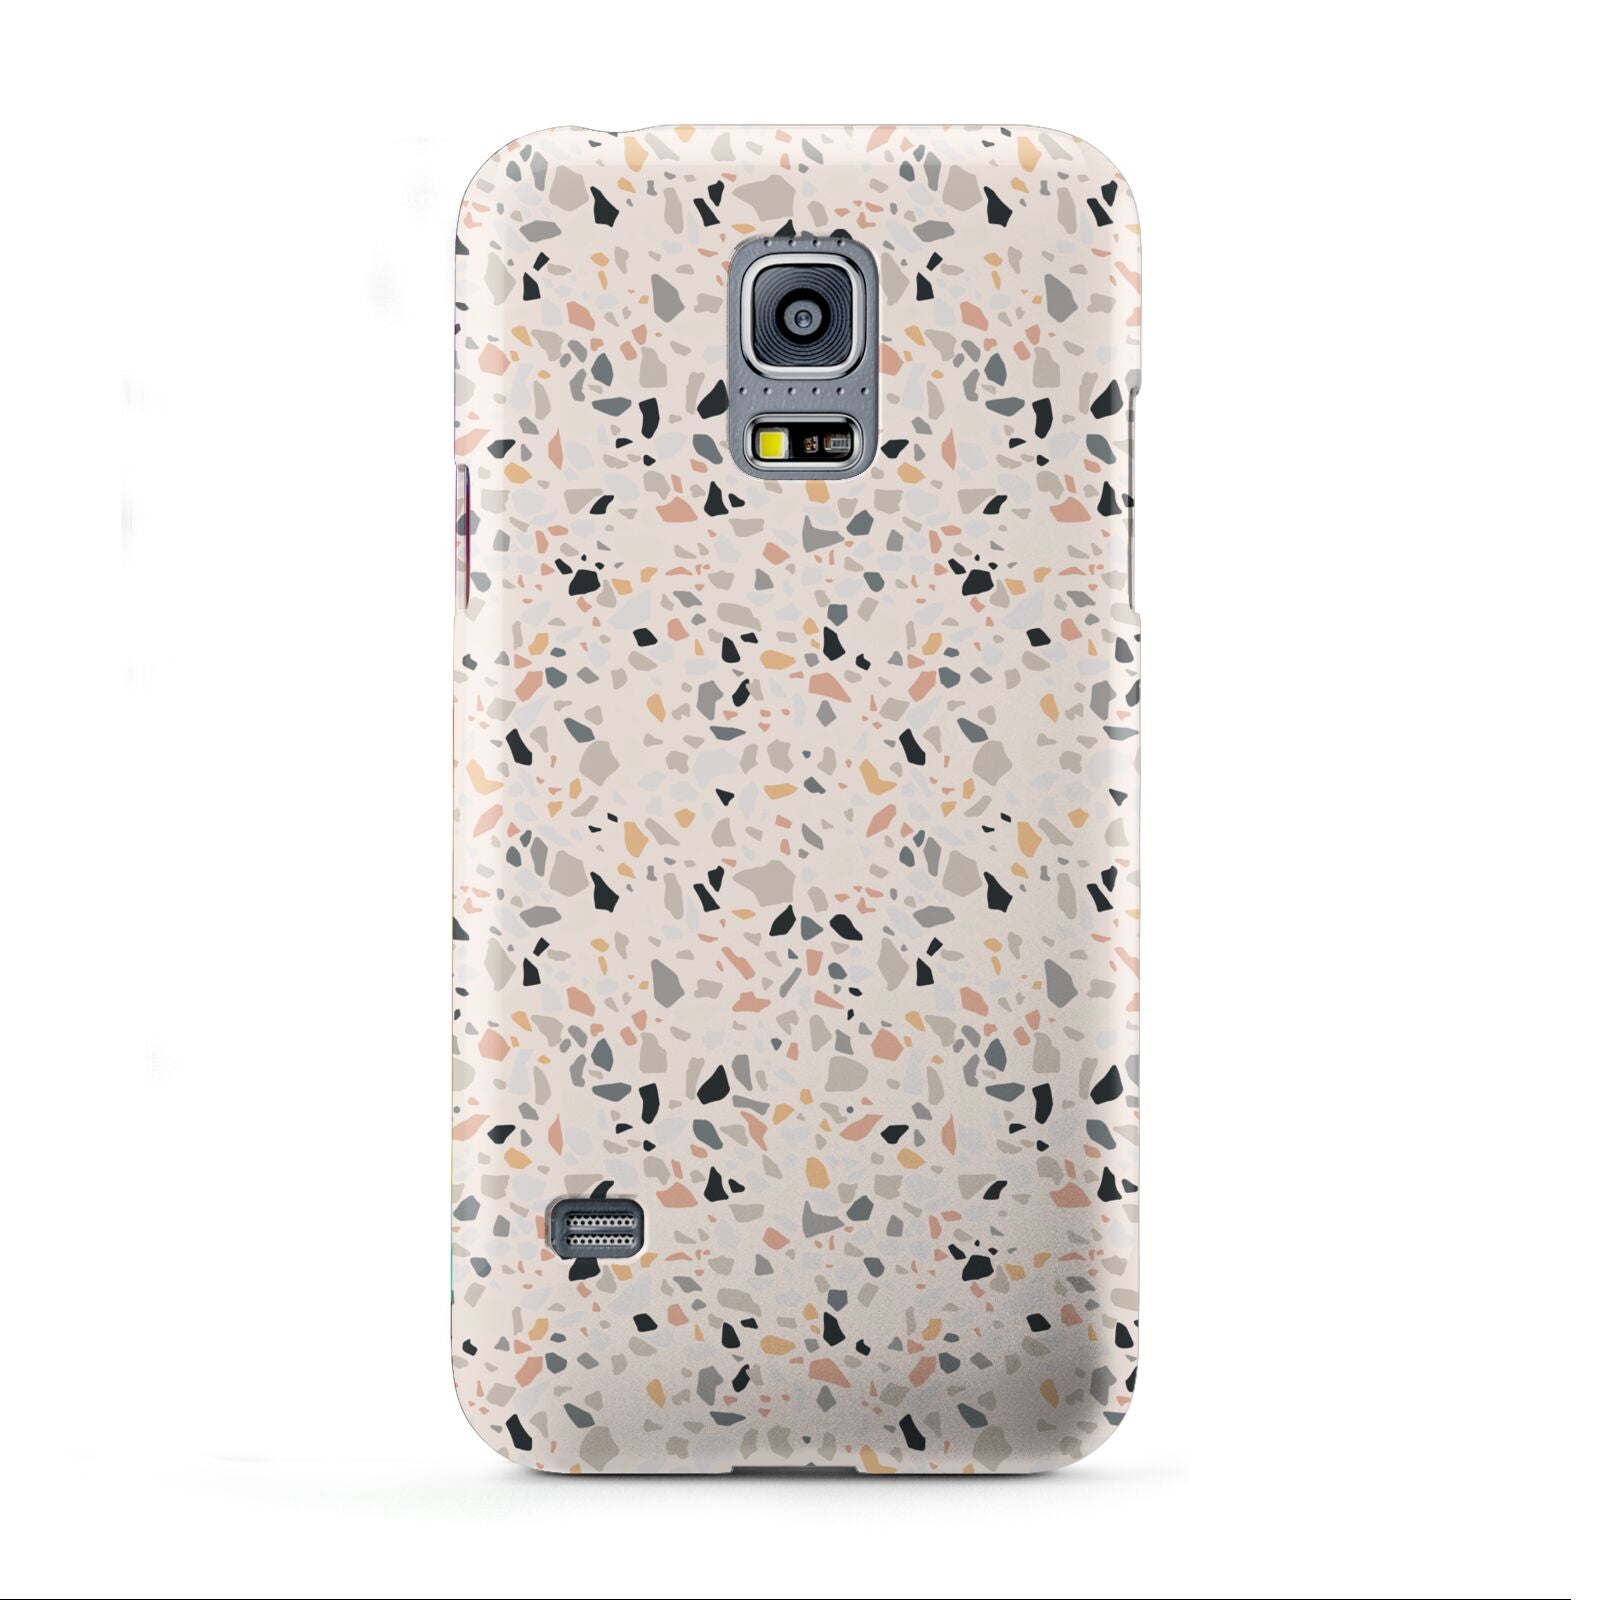 Terrazzo Stone Samsung Galaxy S5 Mini Case